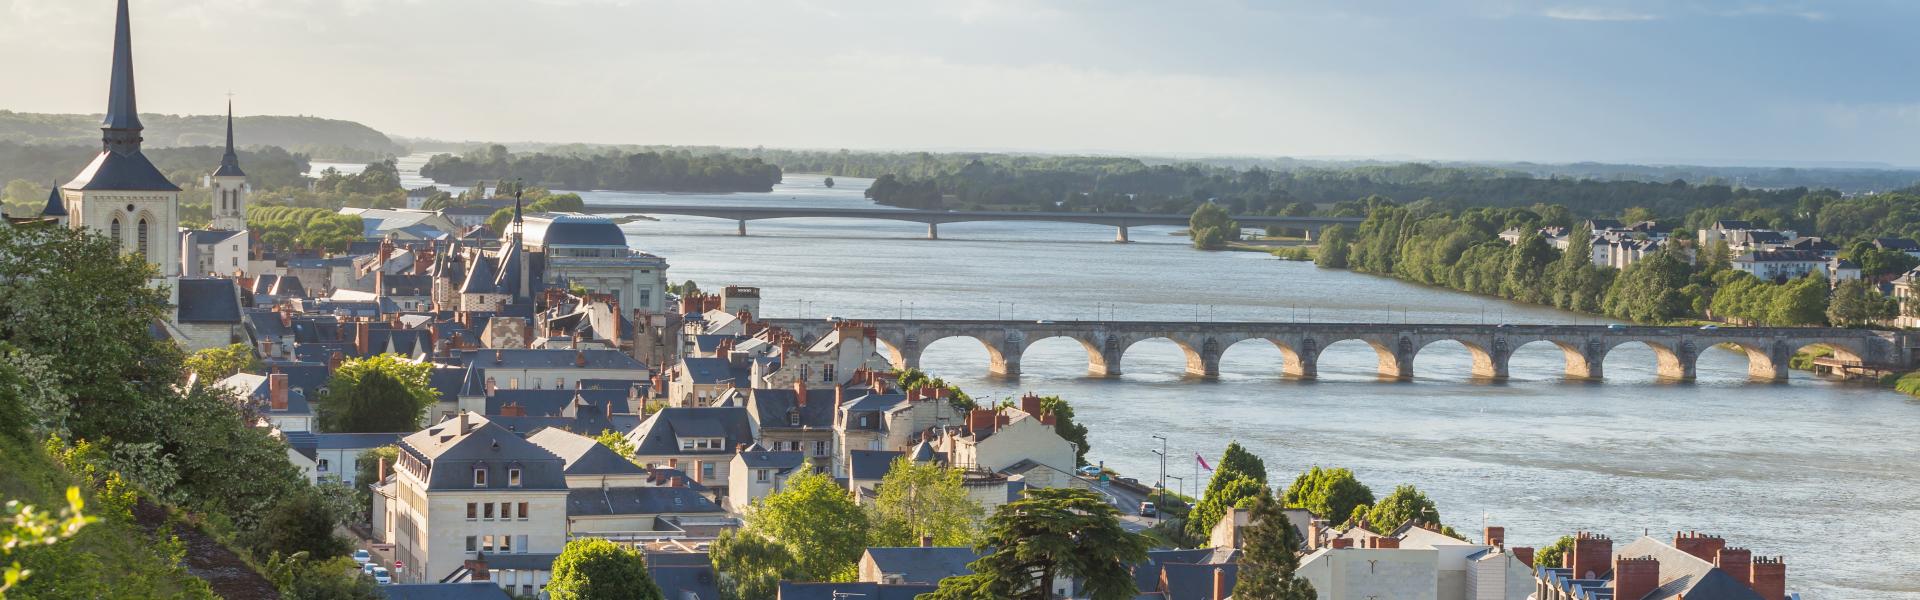 Ferienwohnungen & Ferienhäuser für Urlaub in den Pays de la Loire - Casamundo